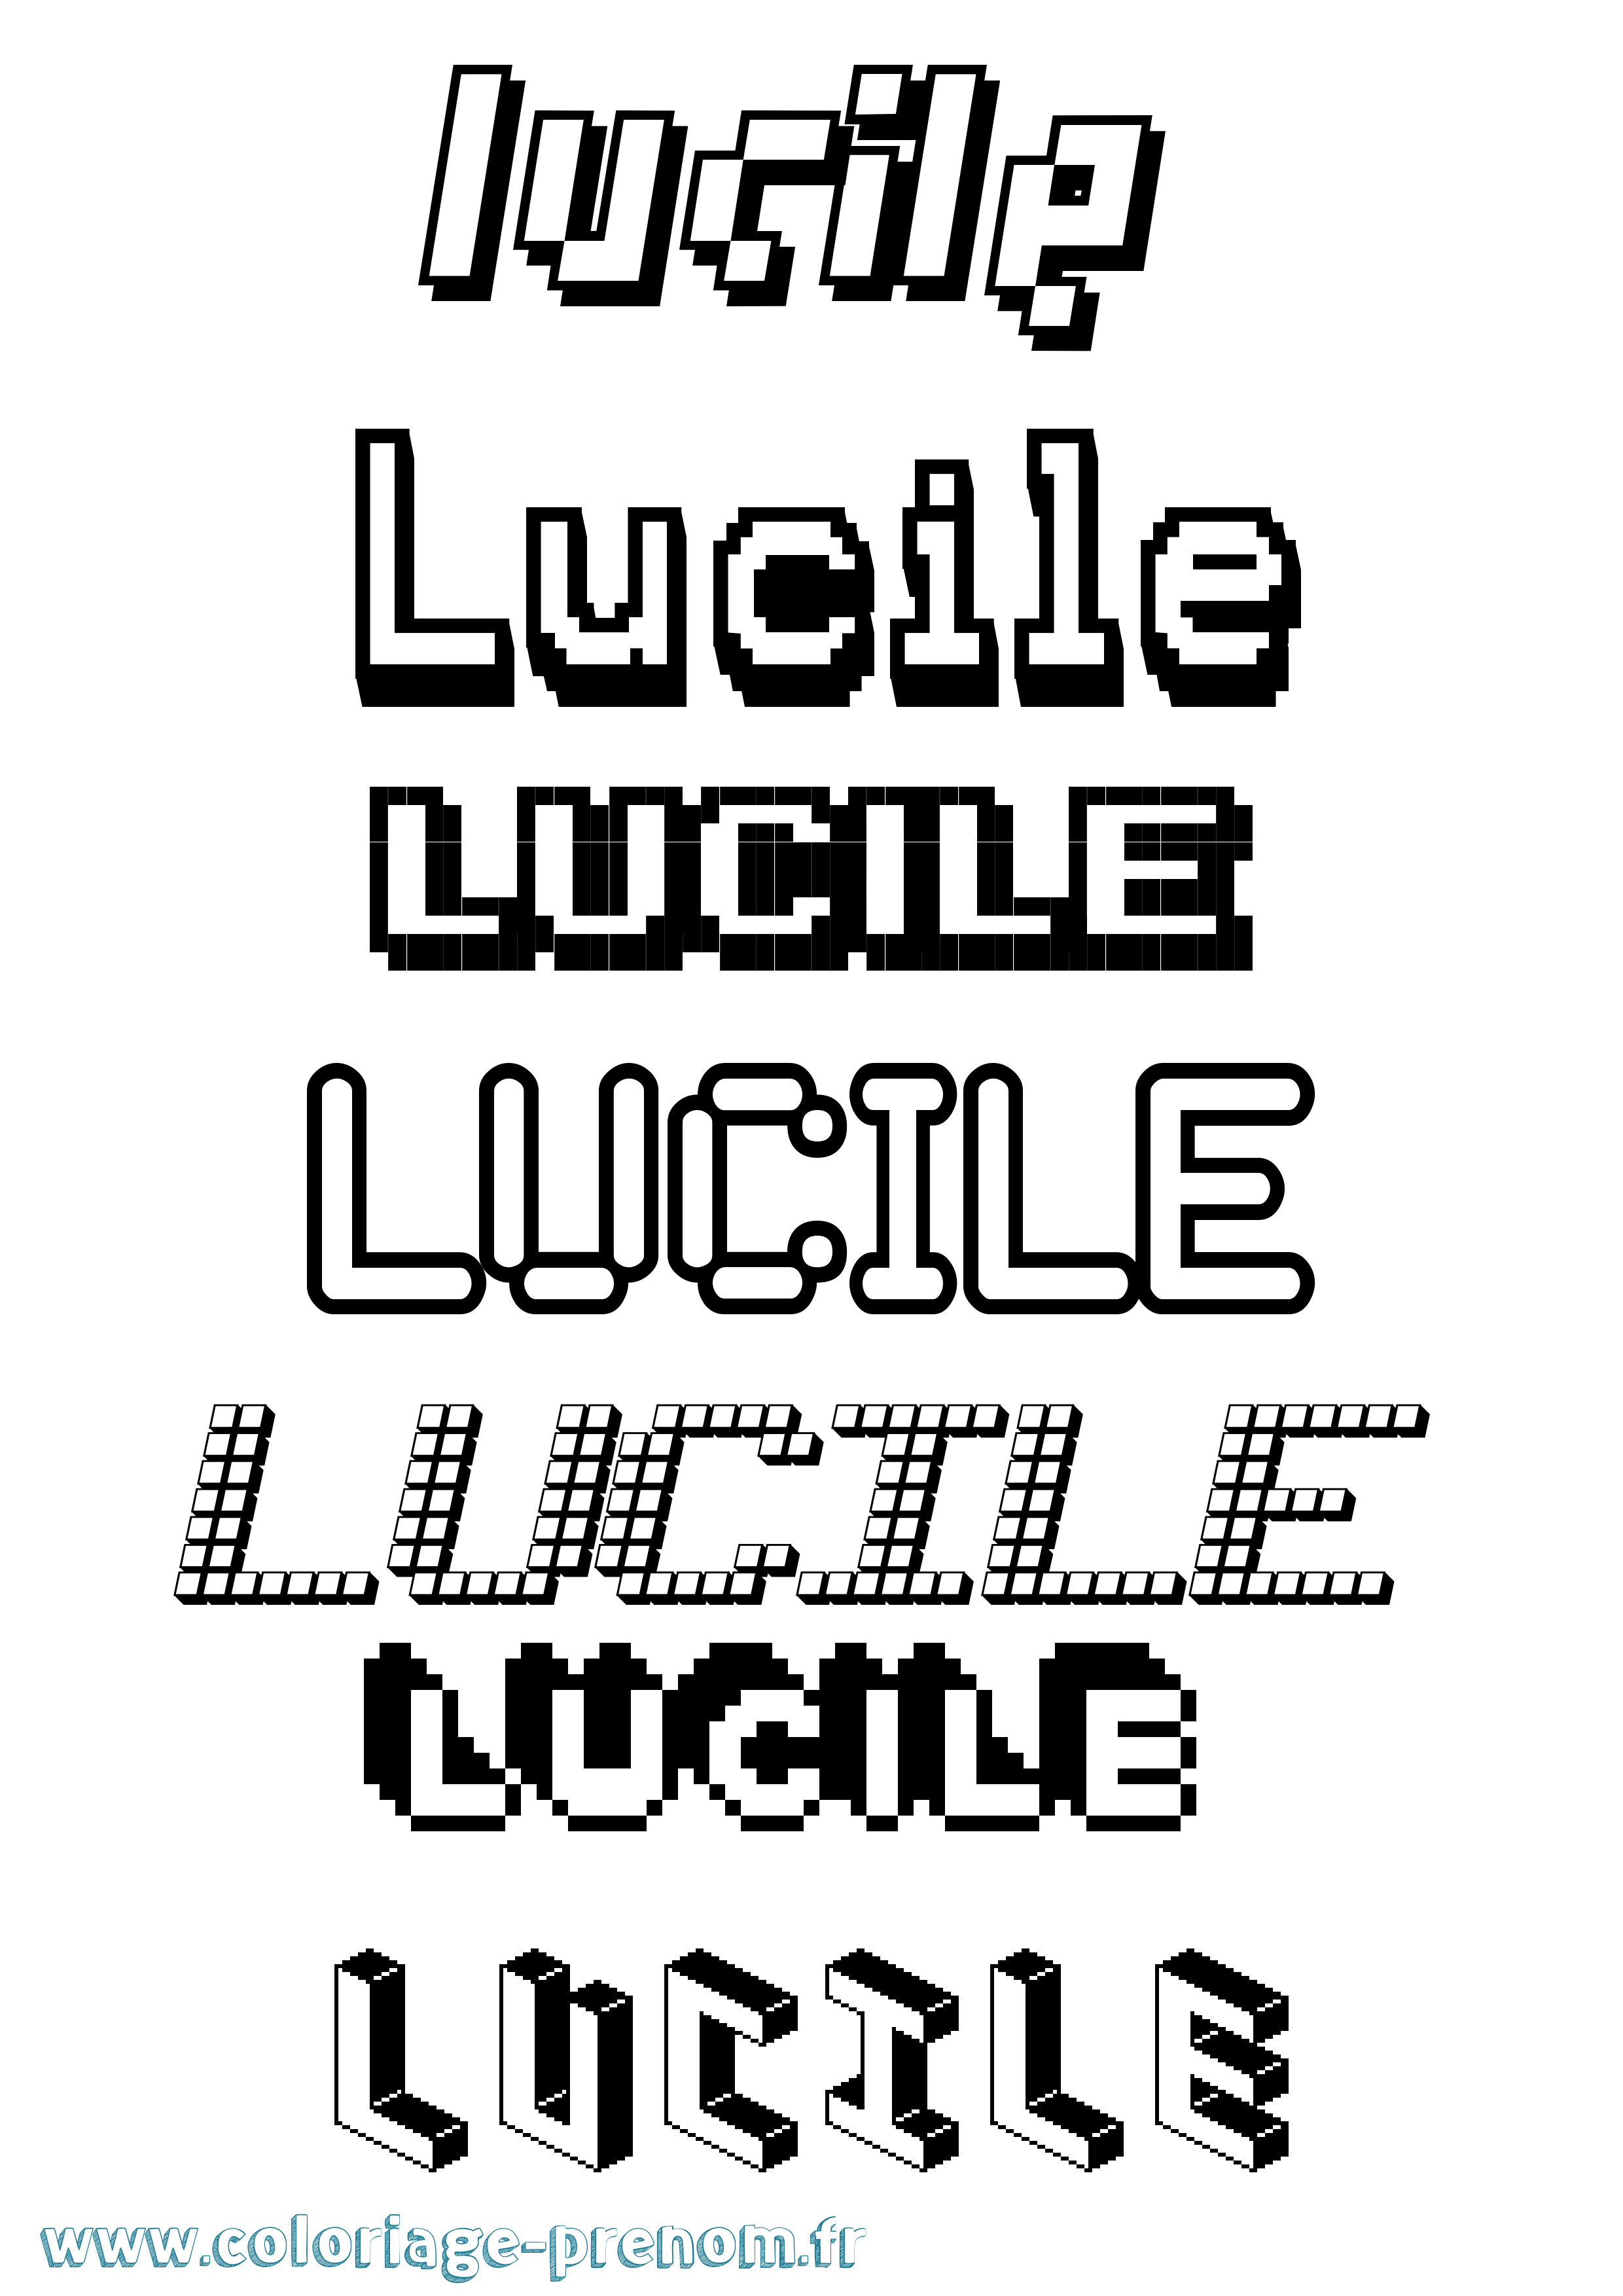 Coloriage prénom Lucile Pixel